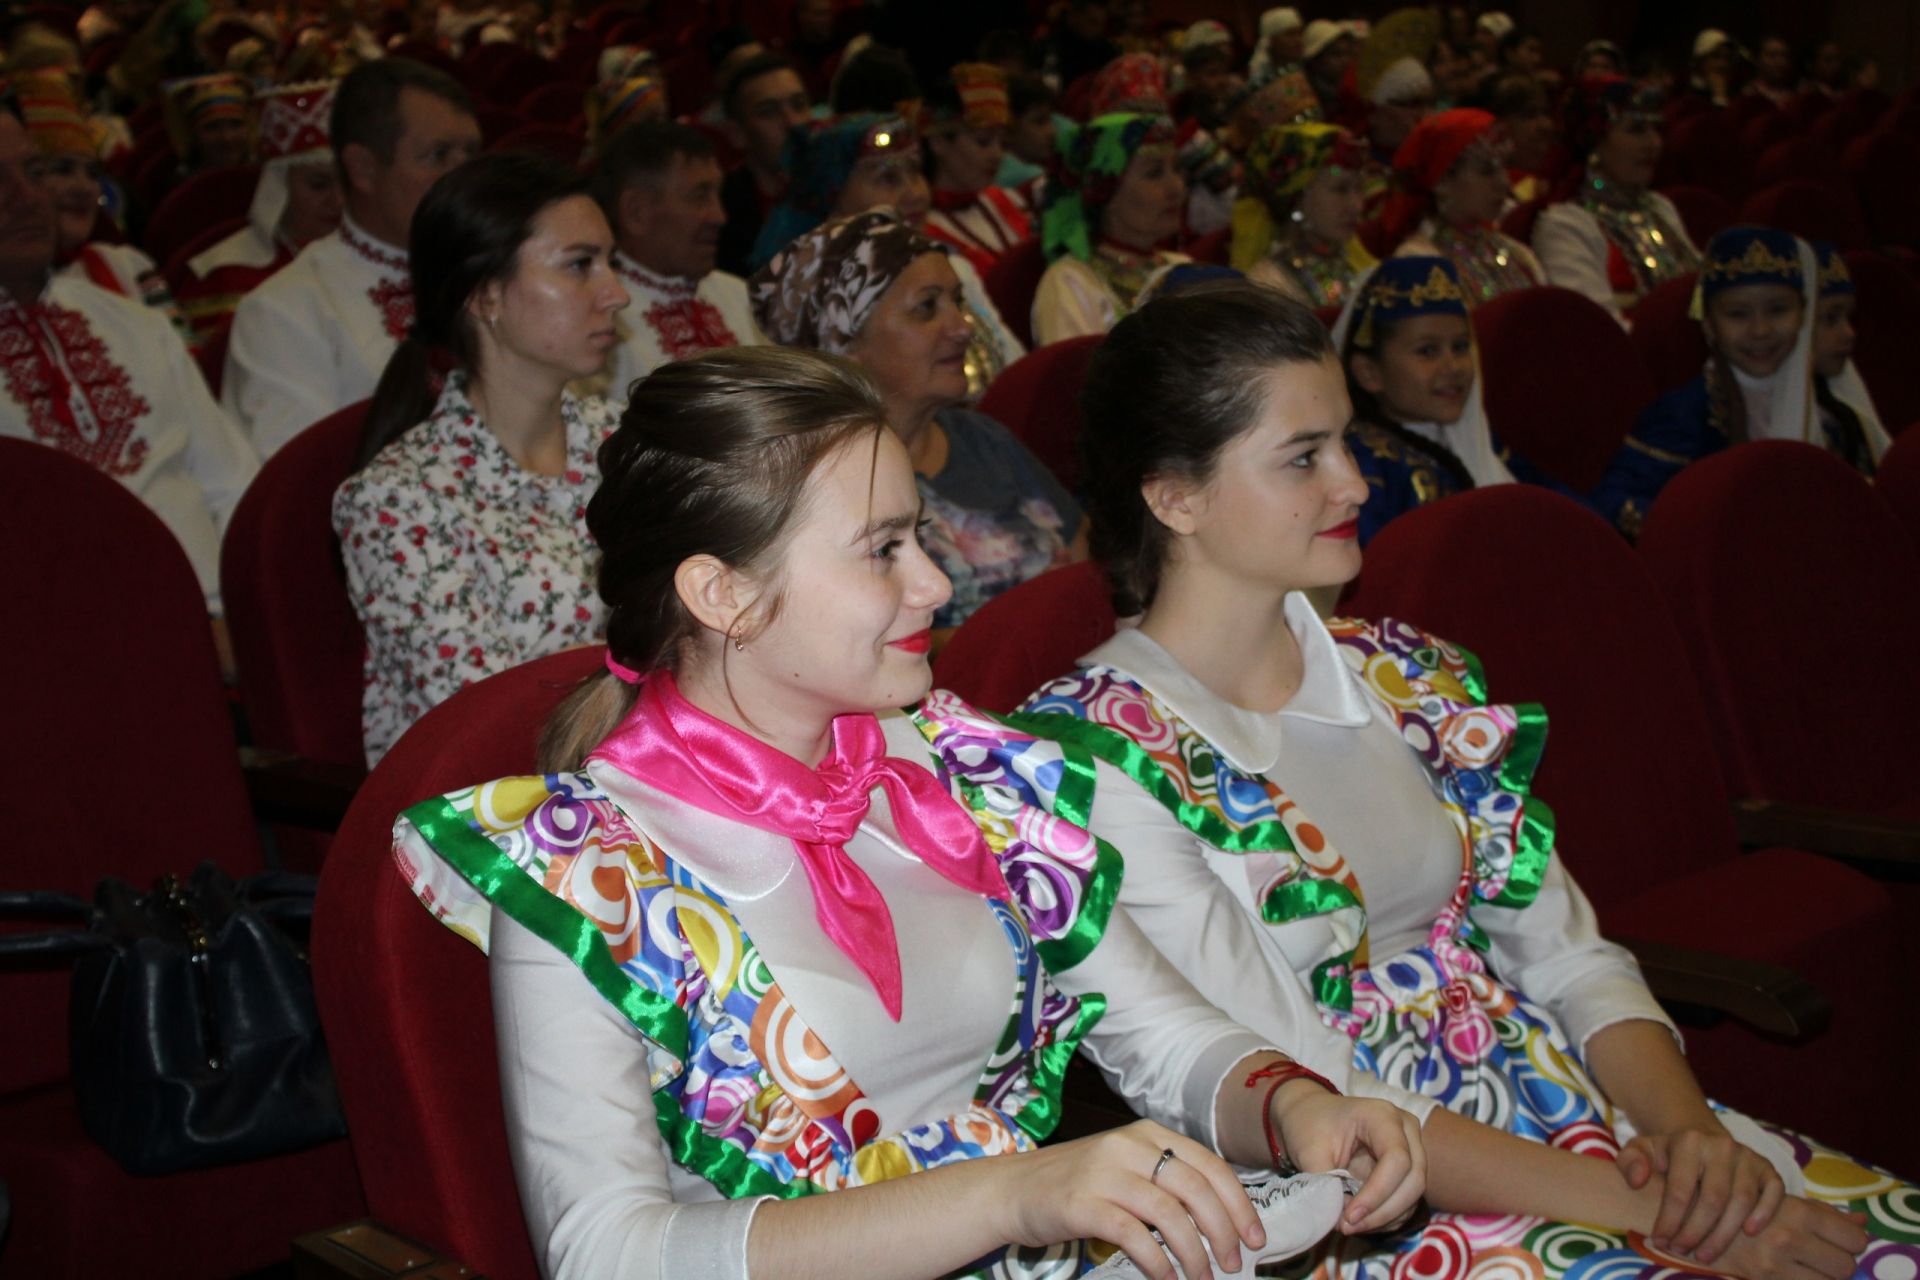 Менделеевцы выступили на отборочном туре Республиканского этнокультурного фестиваля «Наш дом – Татарстан»